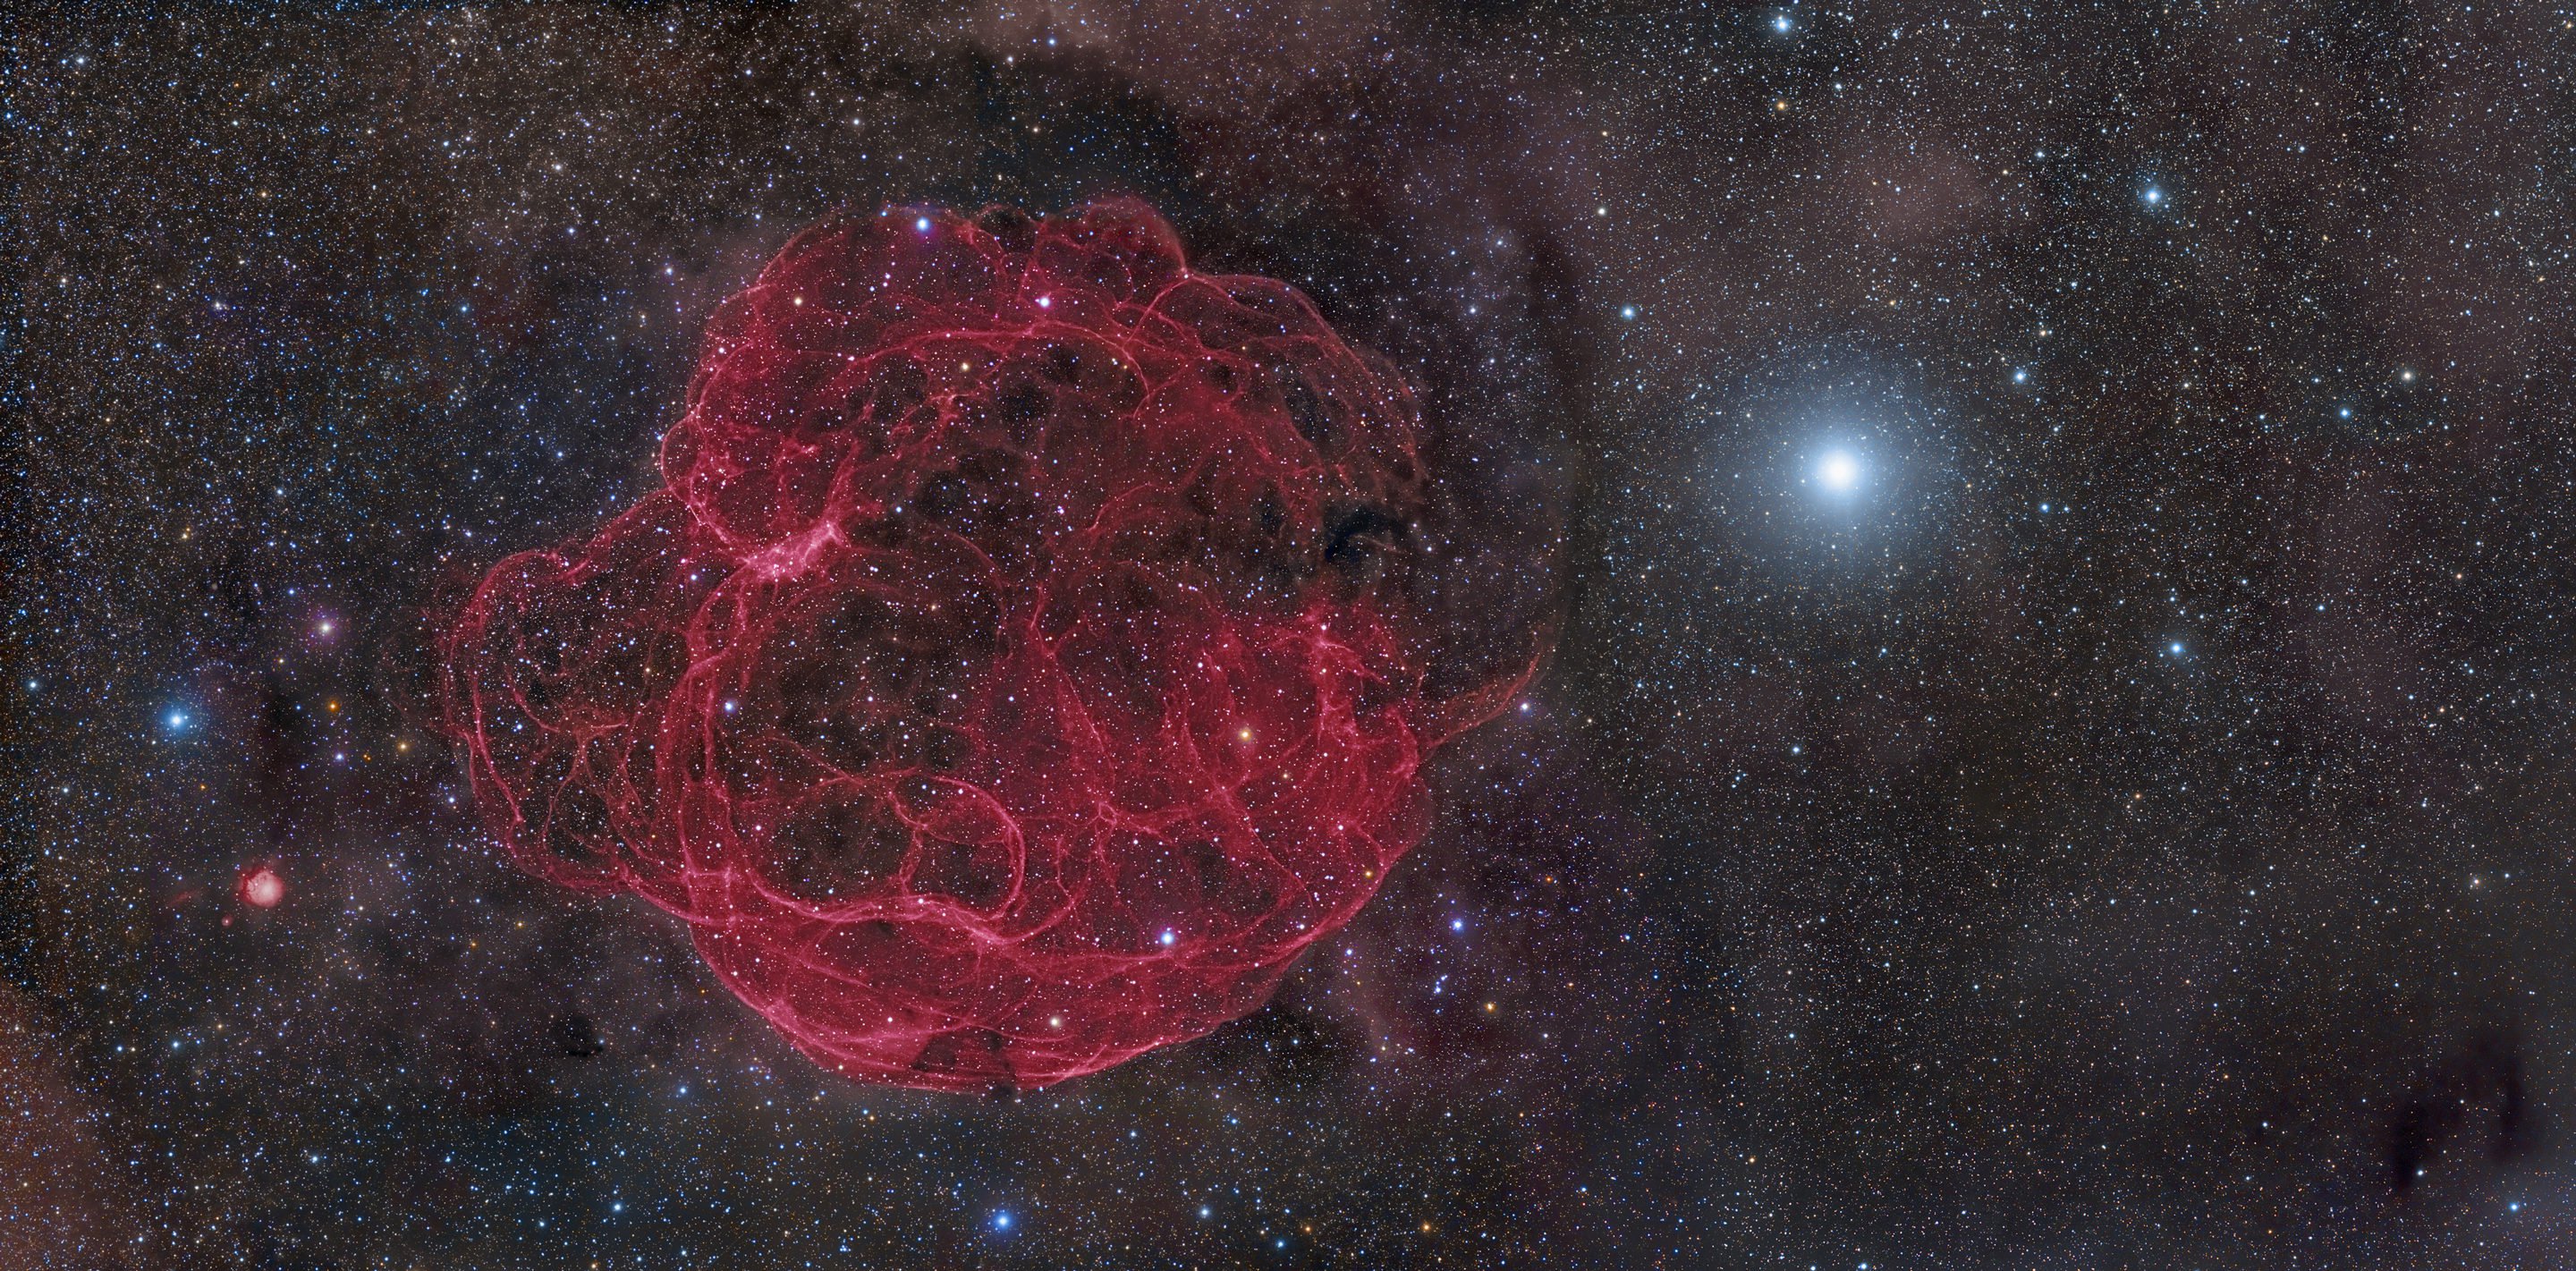 Le flash d'une supernova à proximité pourrait détruire des grands animaux des millions d'années